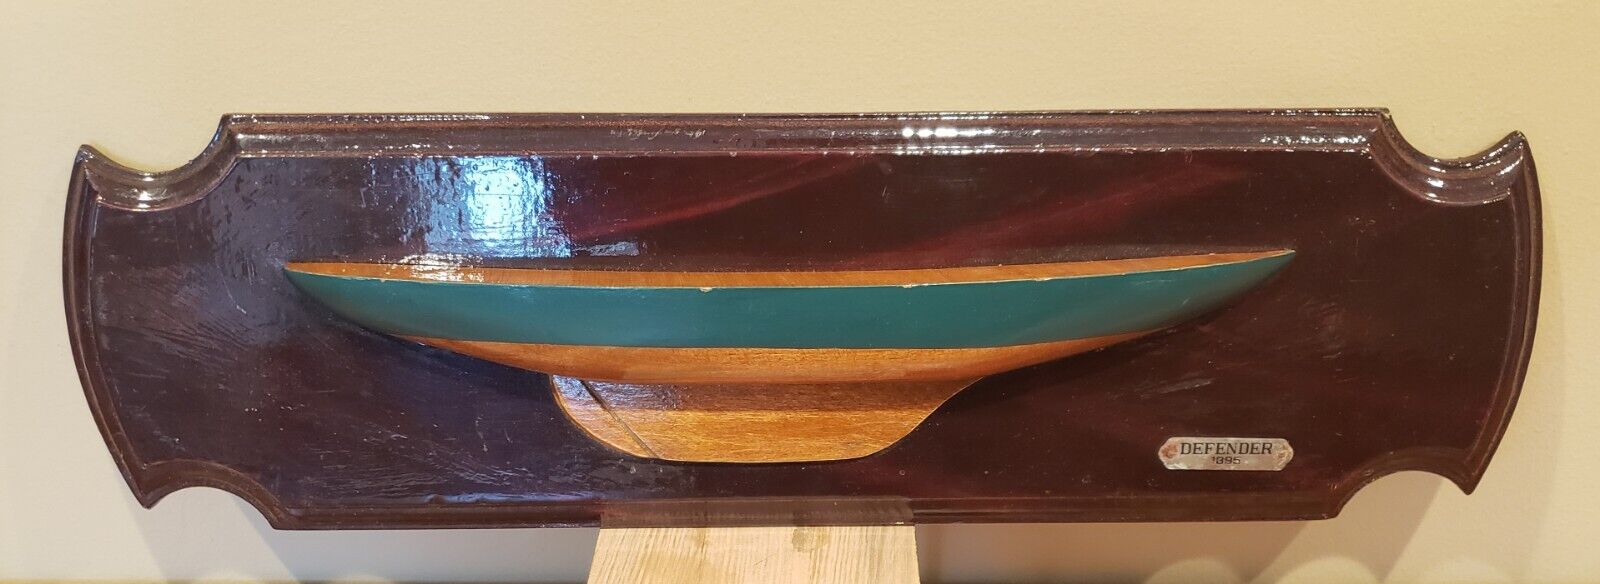 Vintage Defender Half Hull Model on Wooden Plaque Nauitcal Decor